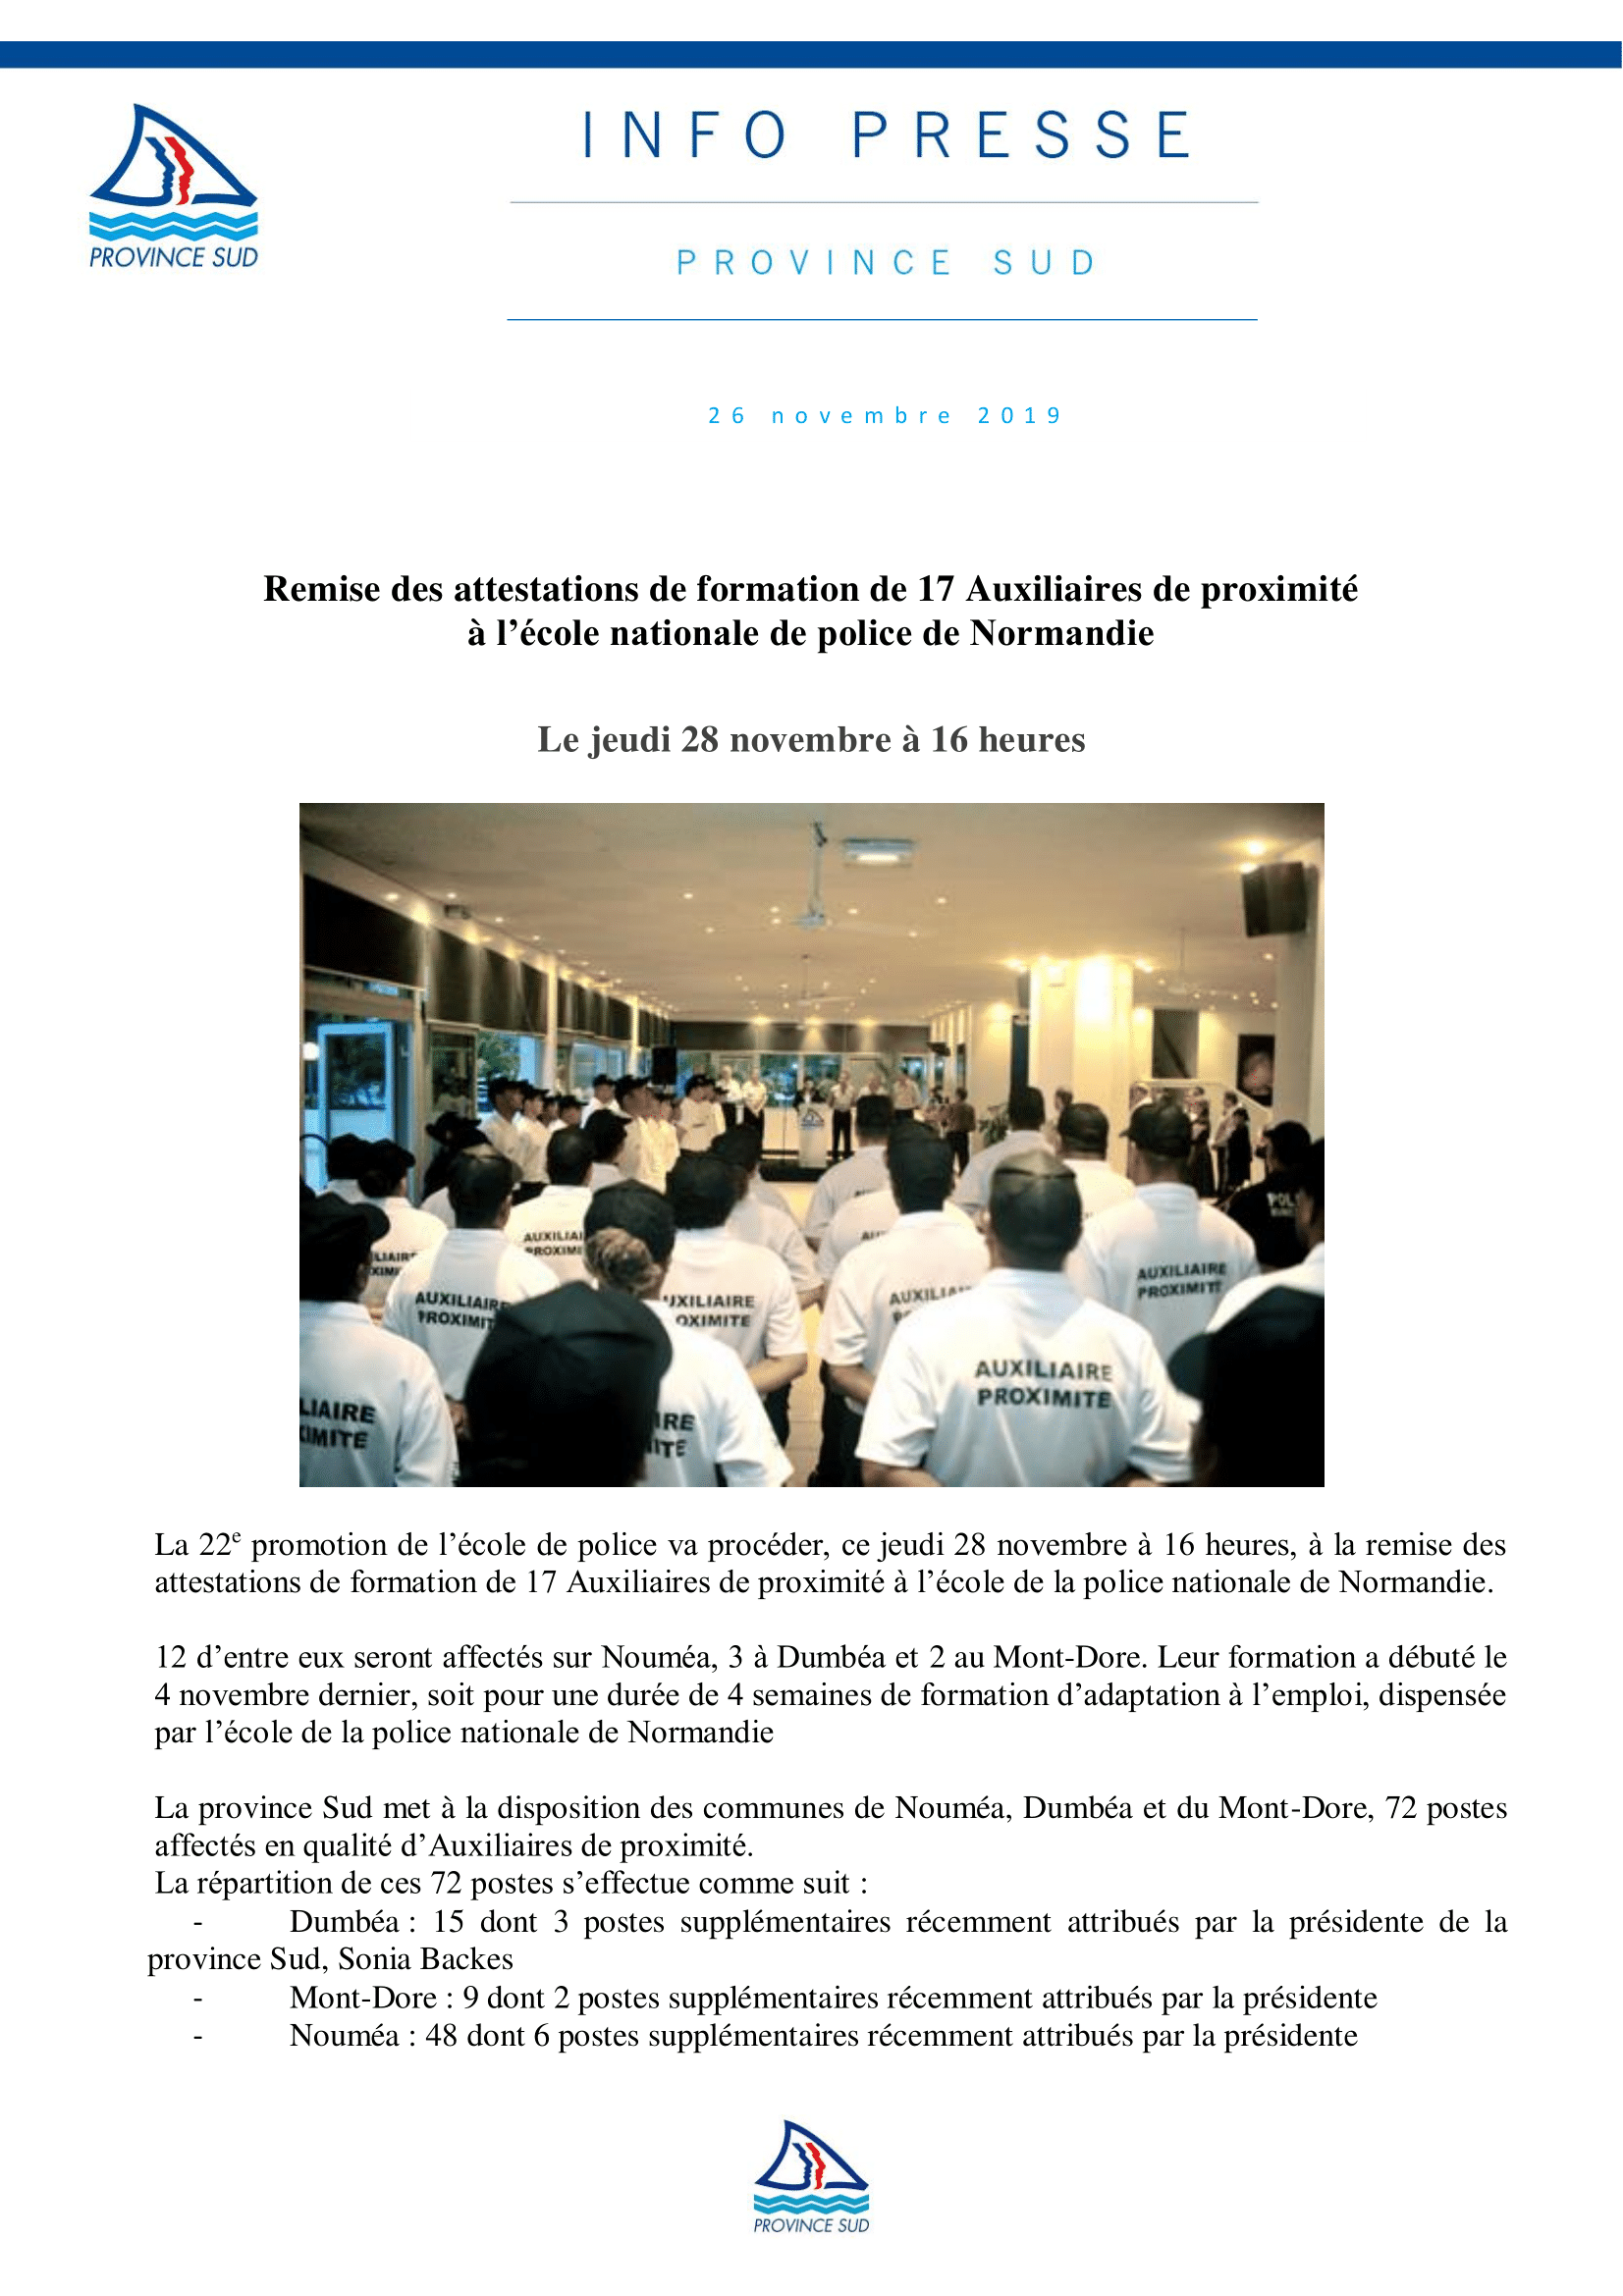  Remise des attestations de formation de 17 Auxiliaires de proximité à l’école nationale de police de Normandie